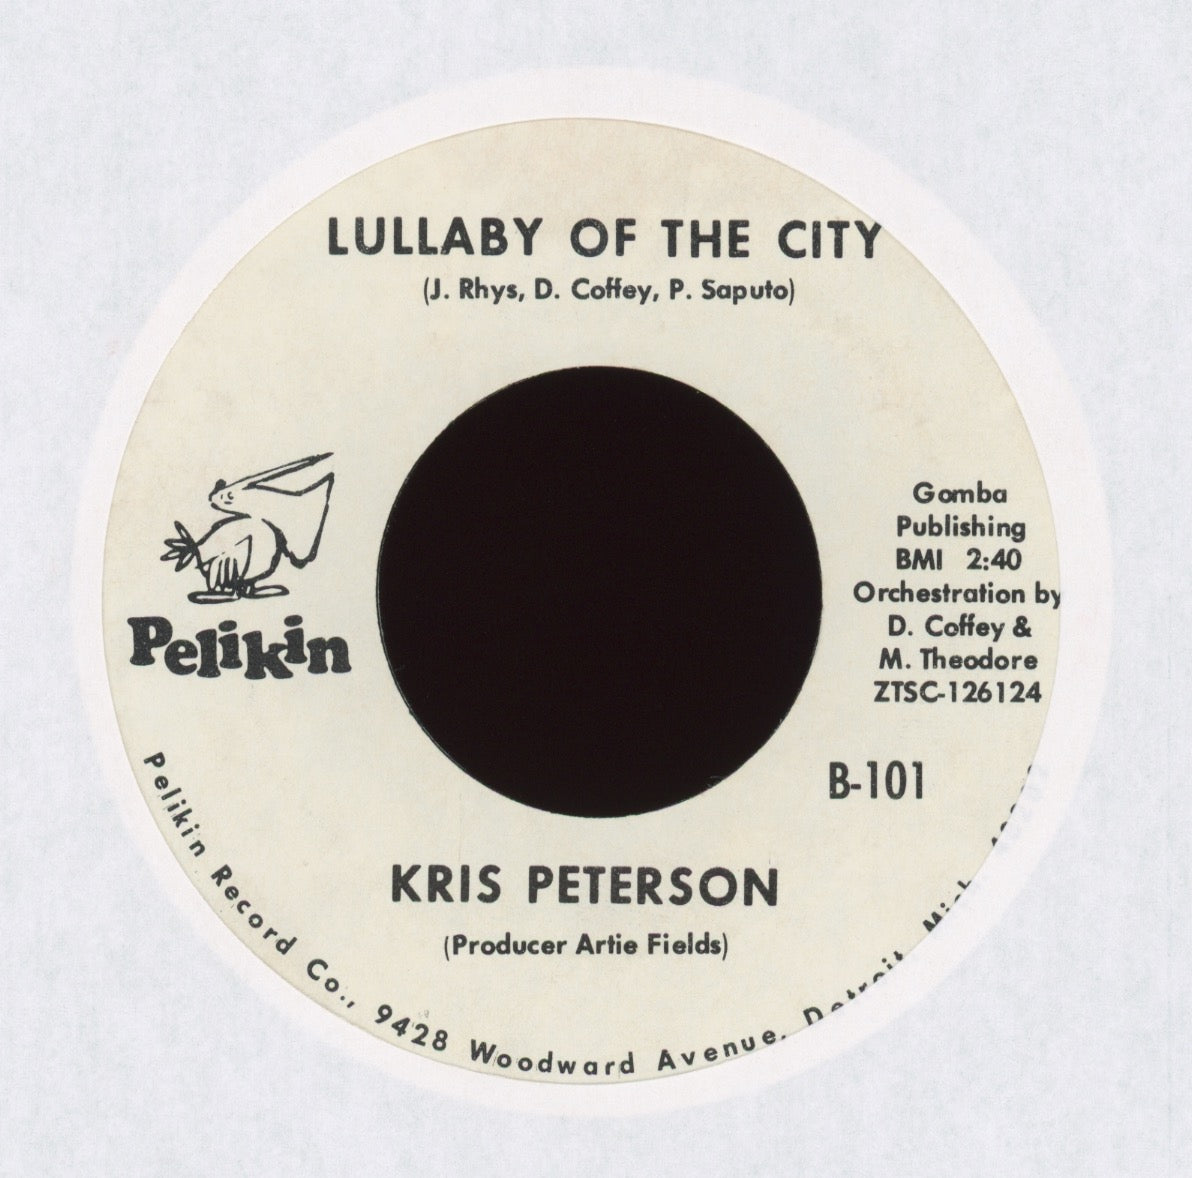 Kris Peterson - I Believe In You on Pelikin